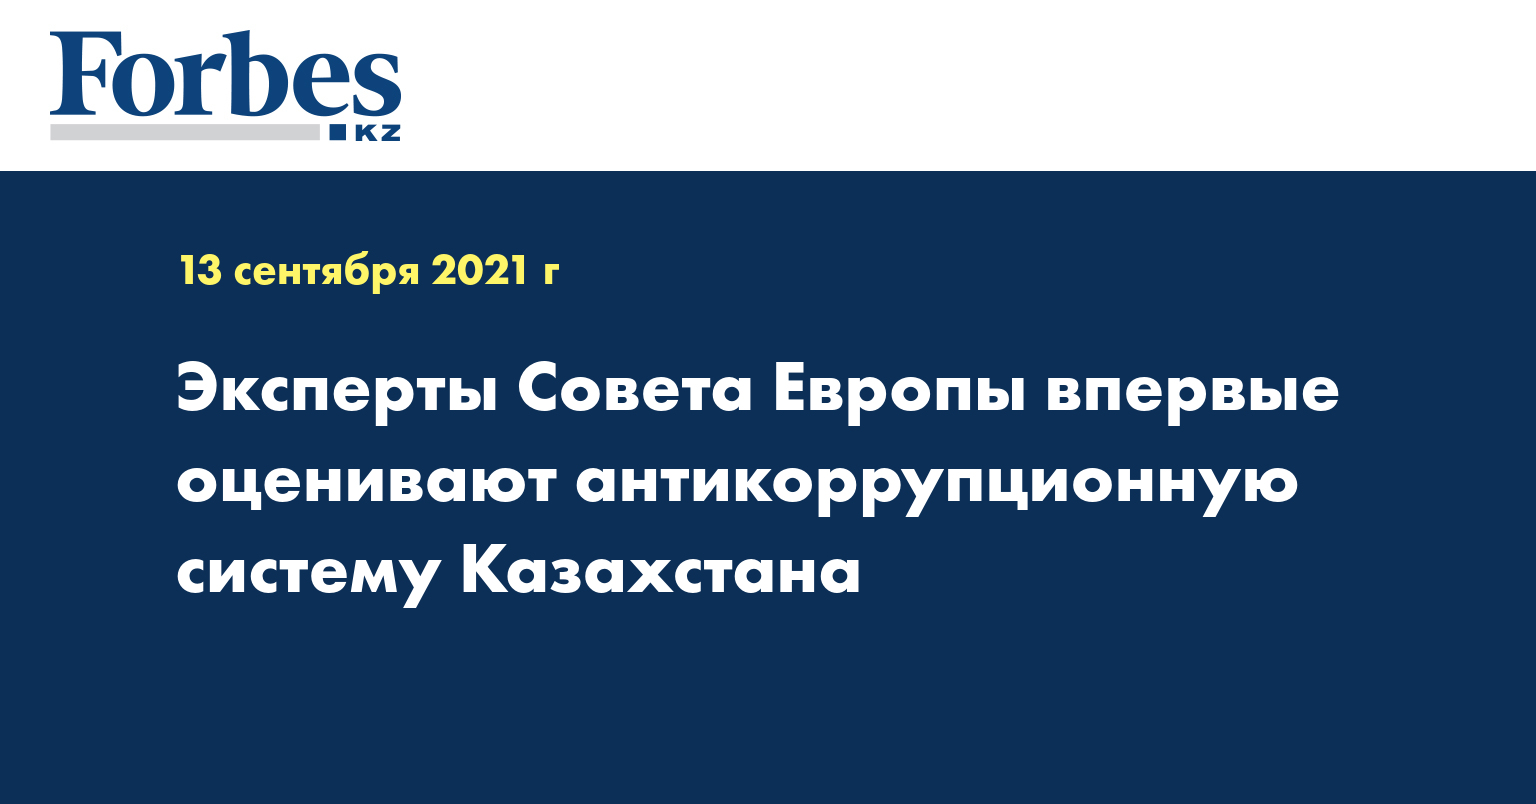 Эксперты Совета Европы впервые оценивают антикоррупционную систему Казахстана